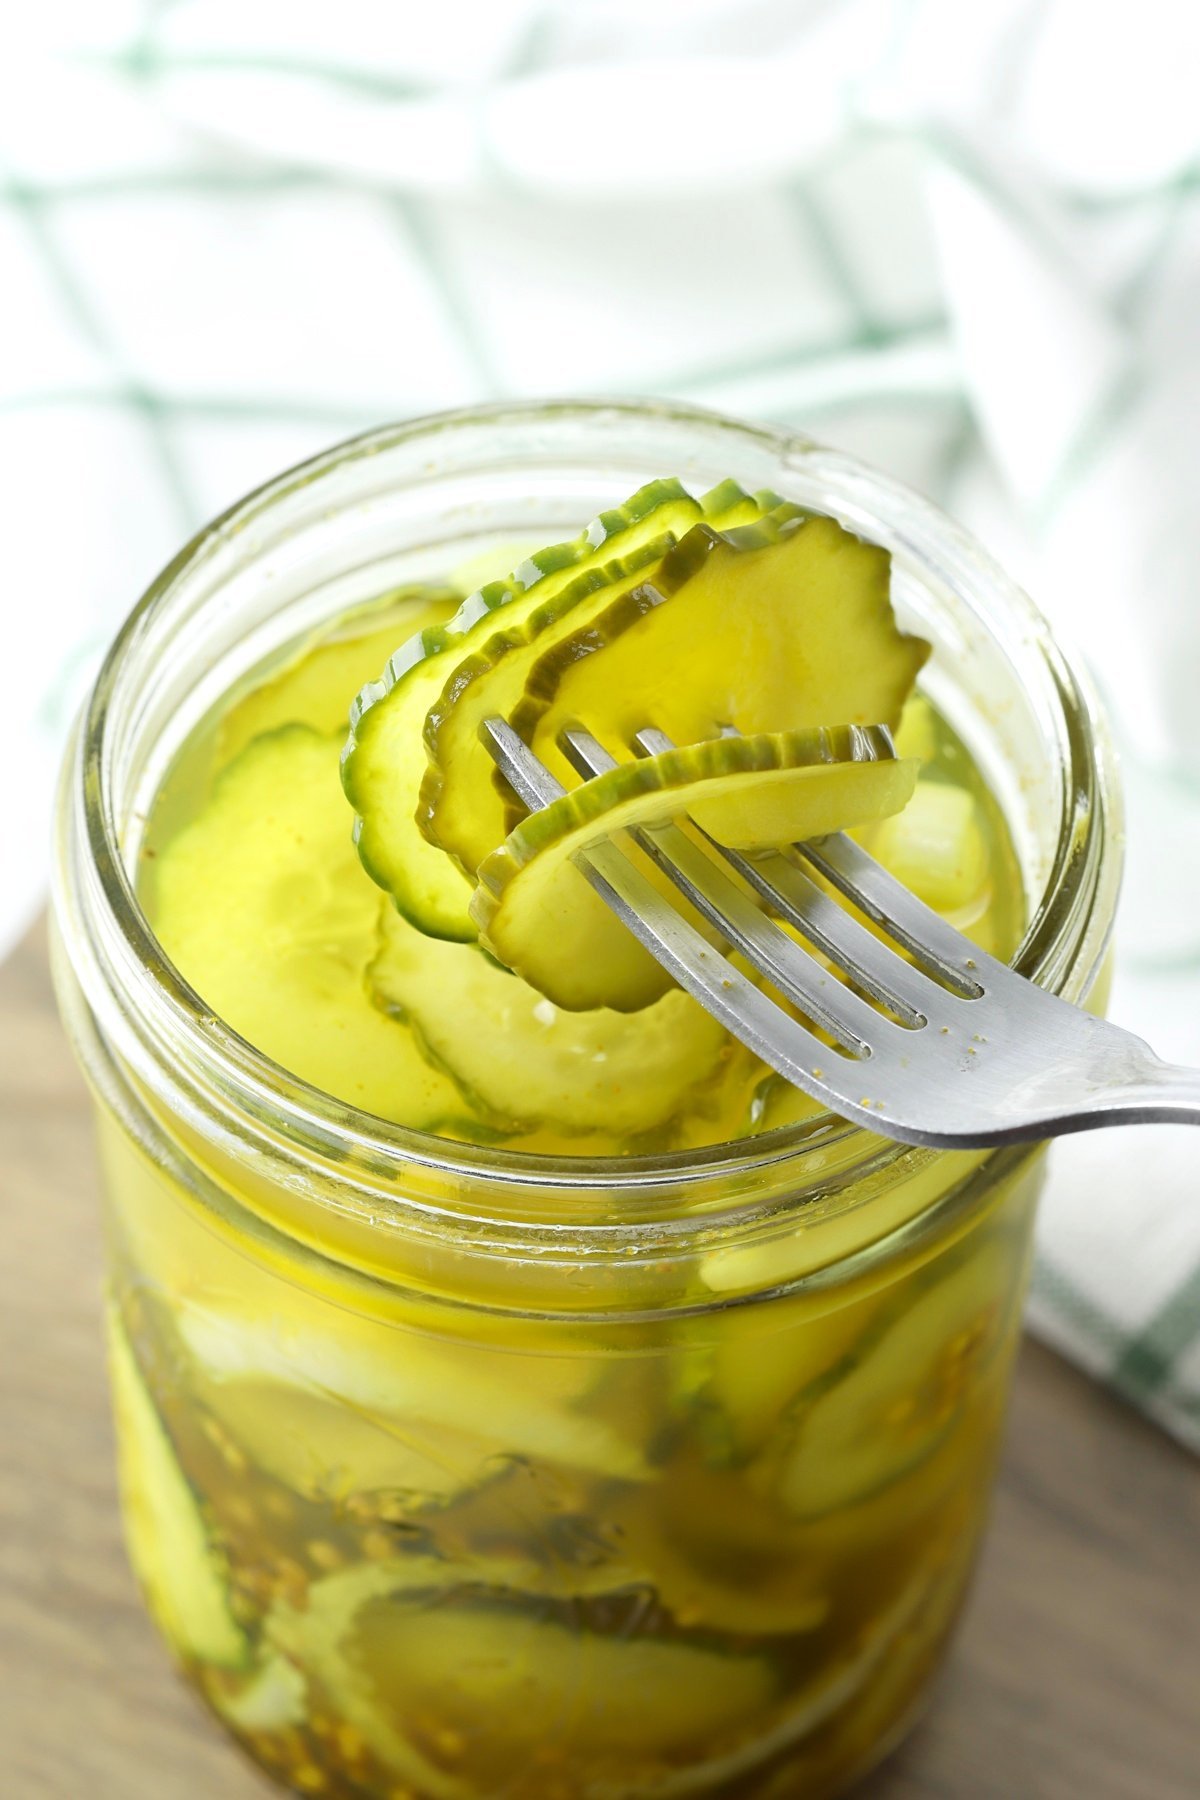 Pickle slices on a fork.